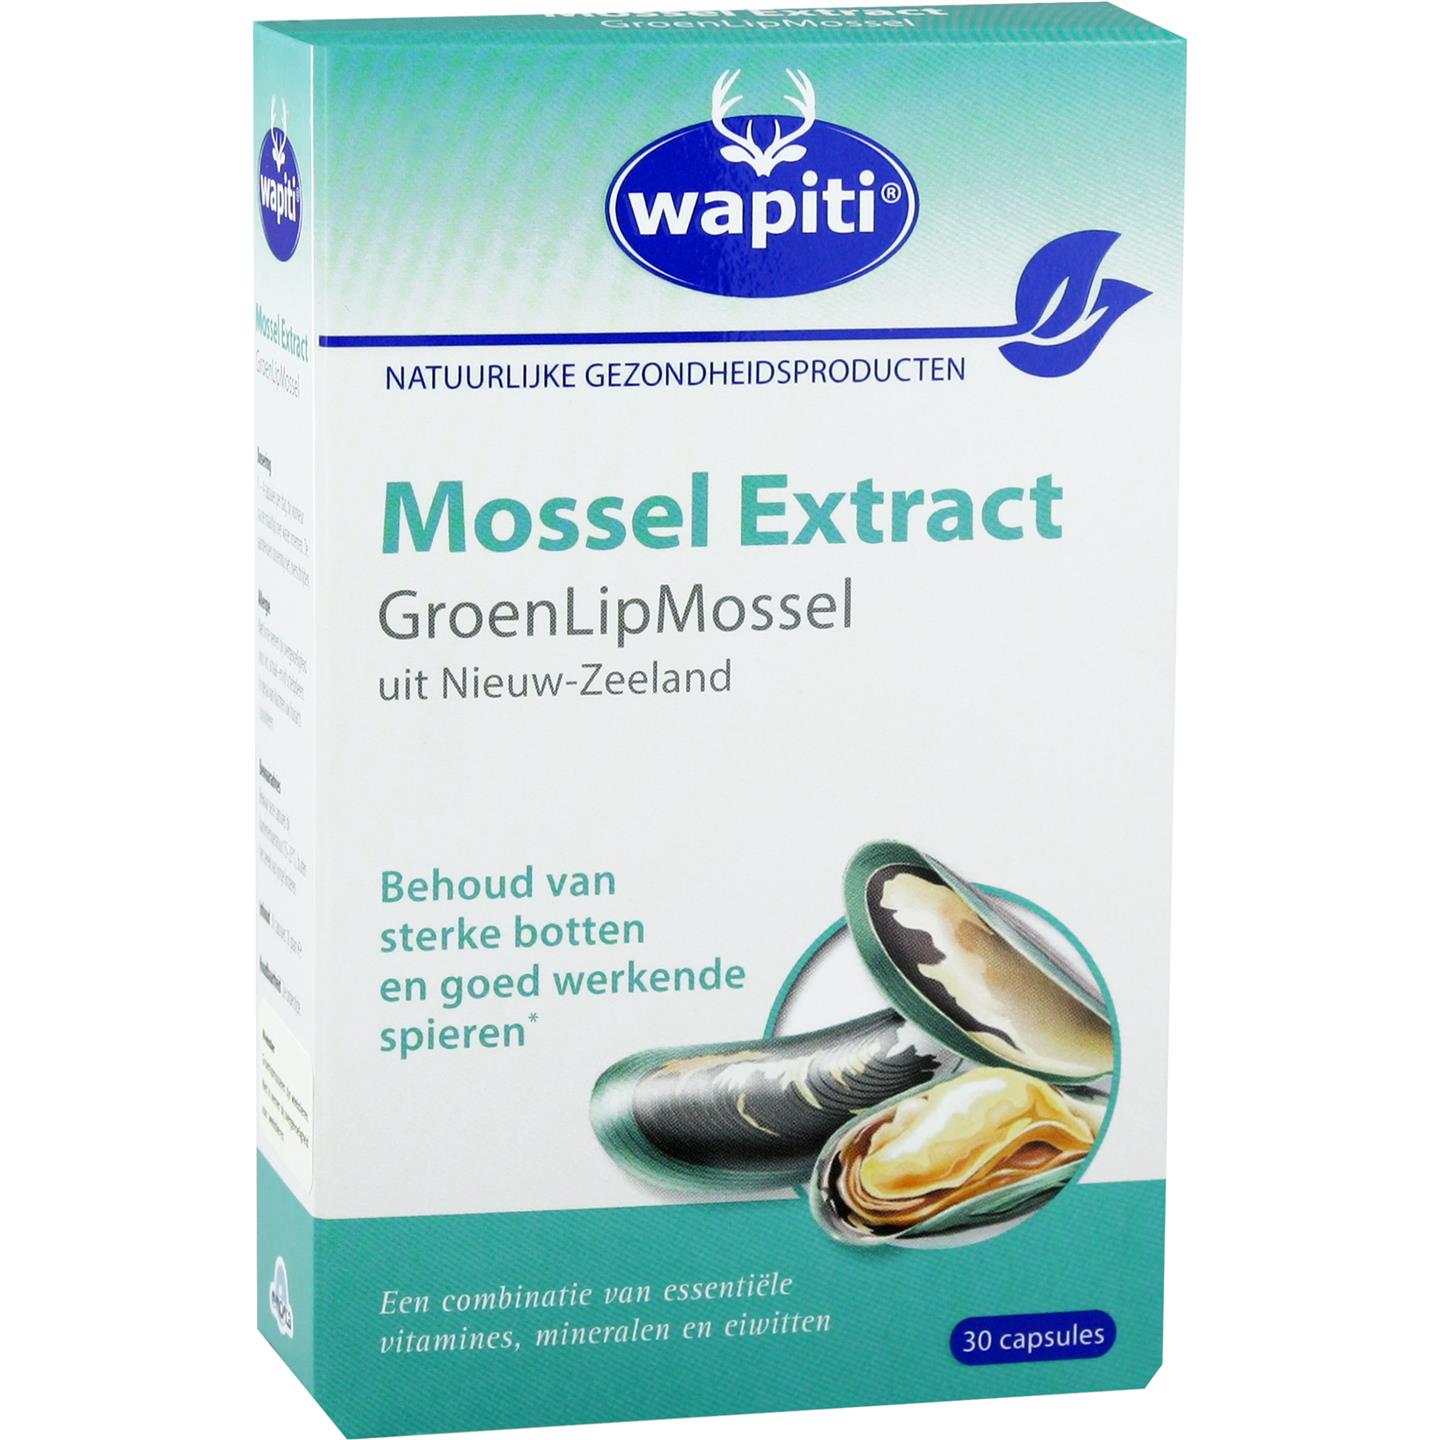 Mossel extract